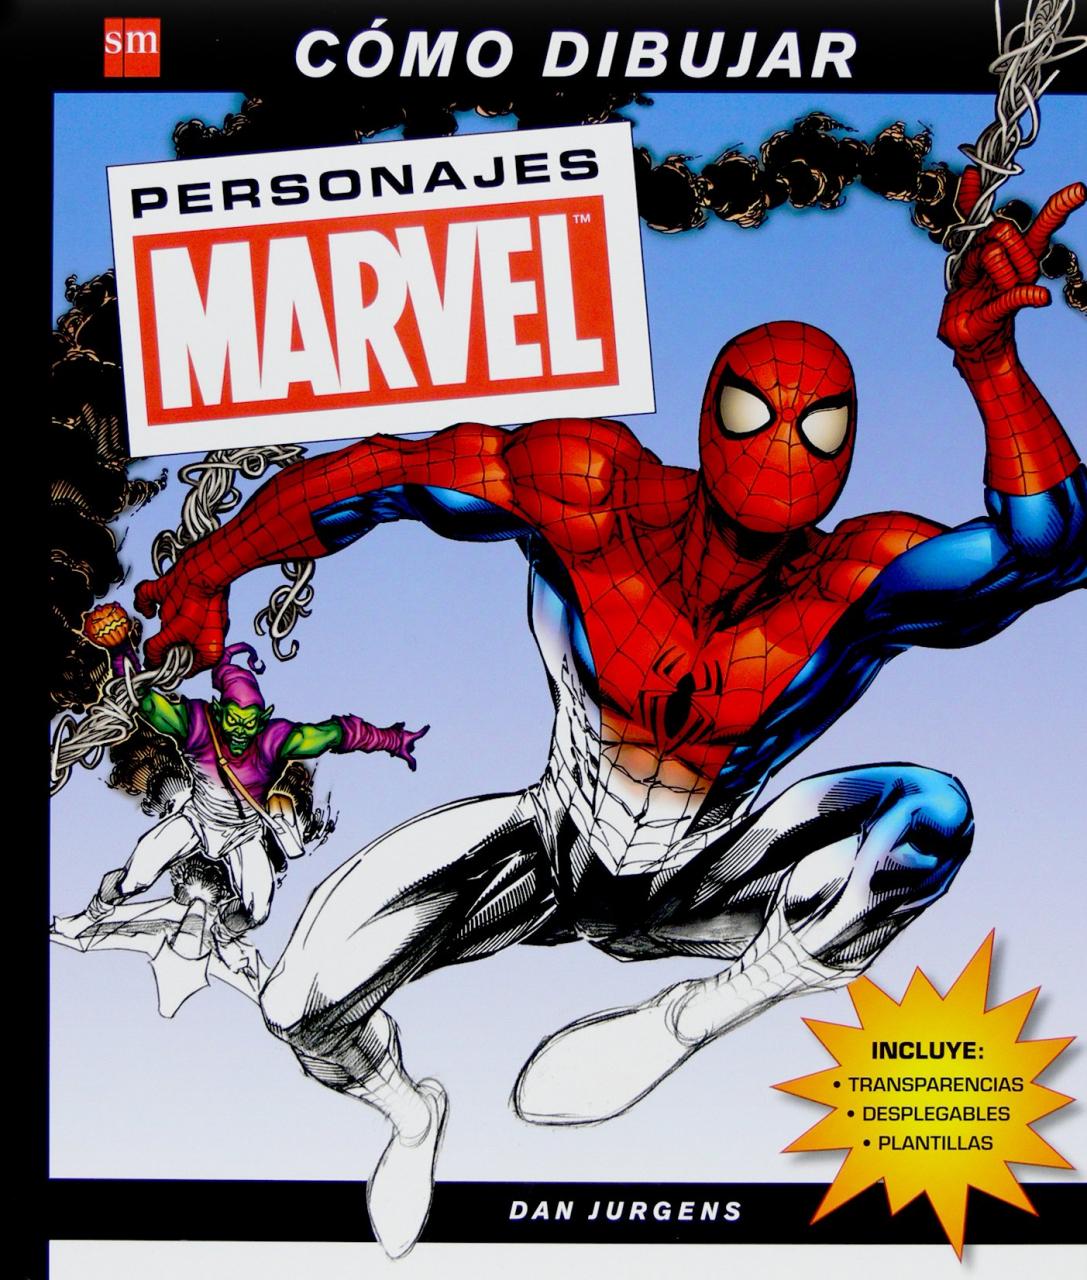 Cómo dibujar personajes Marvel: Amazon - es: Jurgens Dan Clemente Julián M - : Libros, dibujos de Personajes De Marvel, como dibujar Personajes De Marvel paso a paso